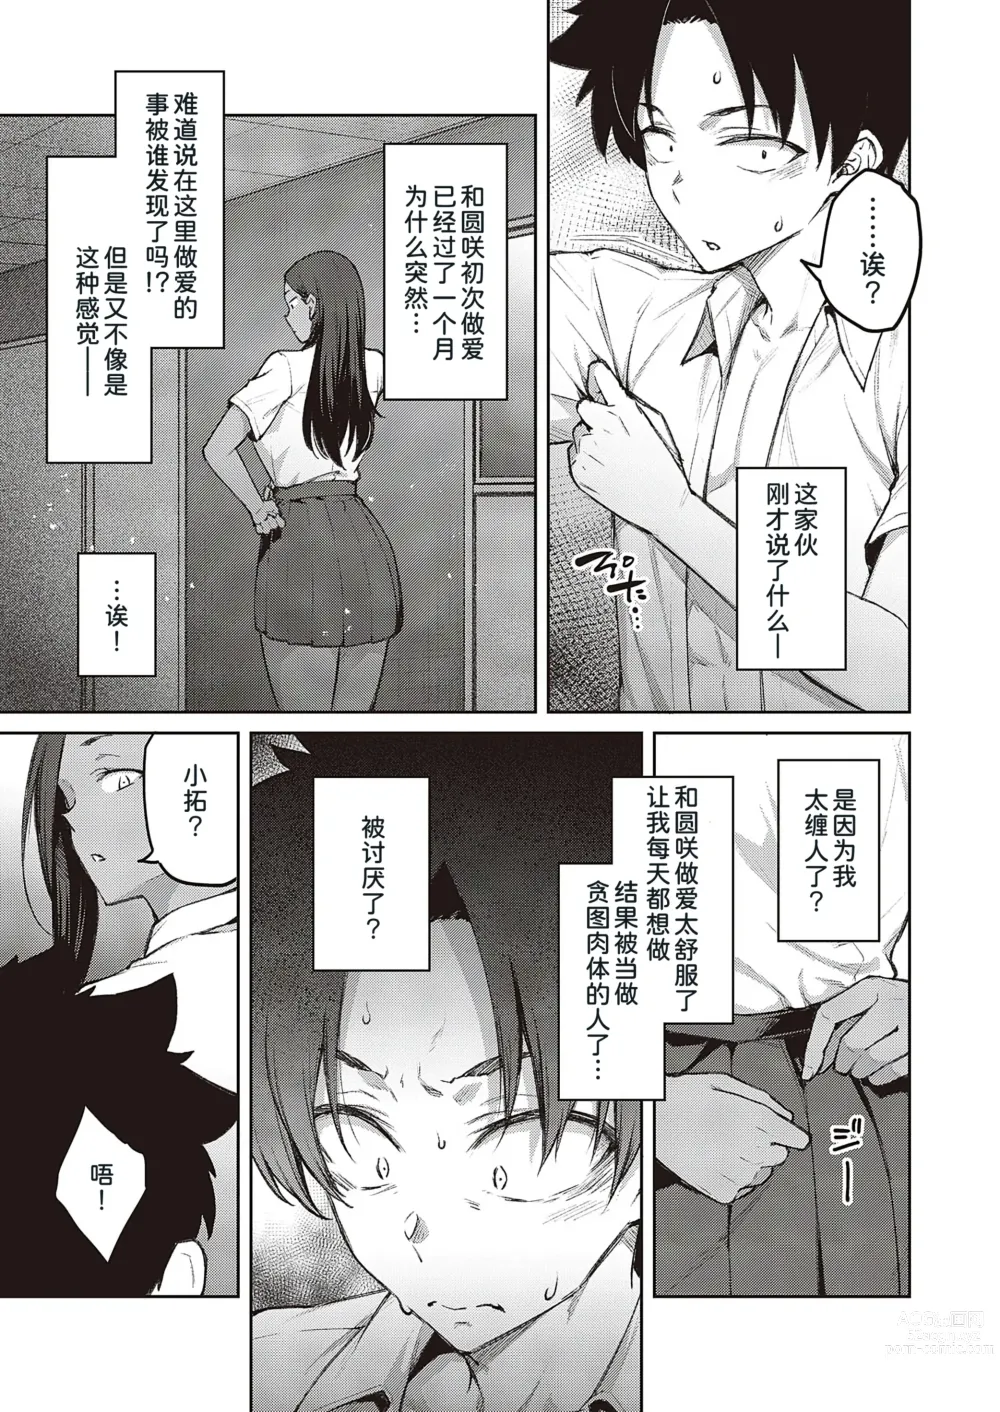 Page 4 of manga Tachiaoi 2